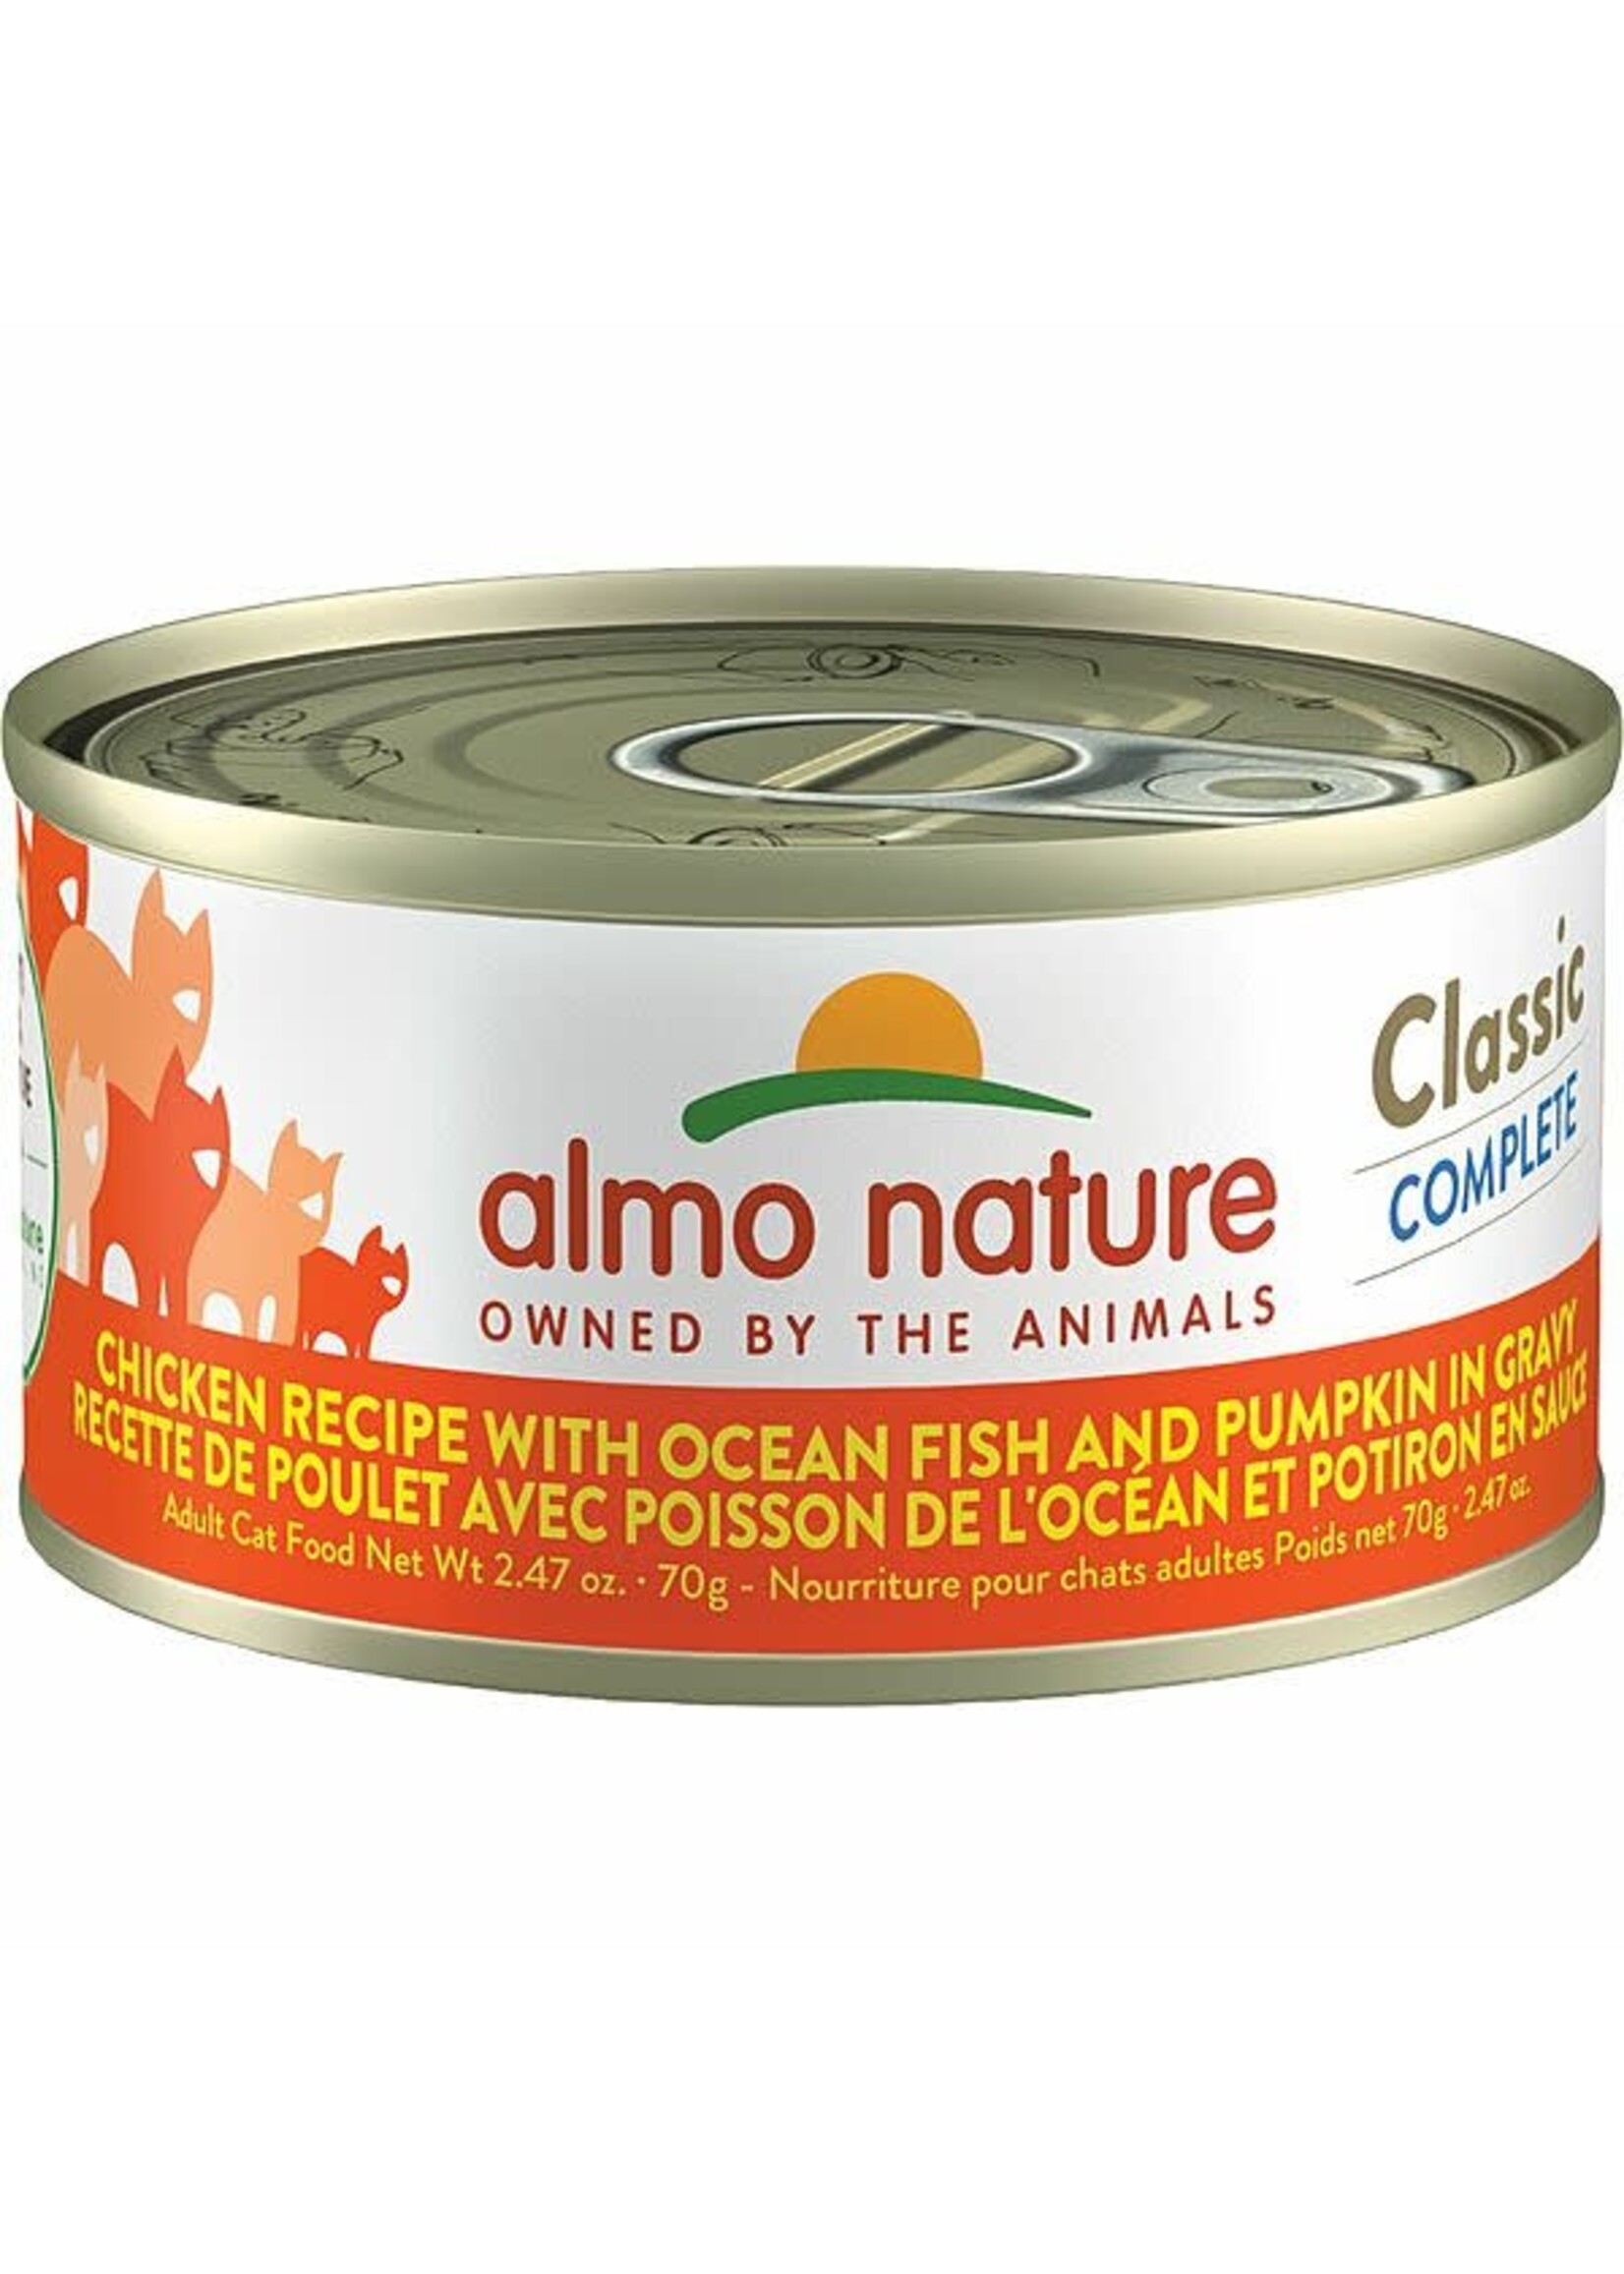 almo Nature almo nature Classic Complete Chicken Recipe w/ Ocean Fish & Pumpkin in Gravy 70gm single